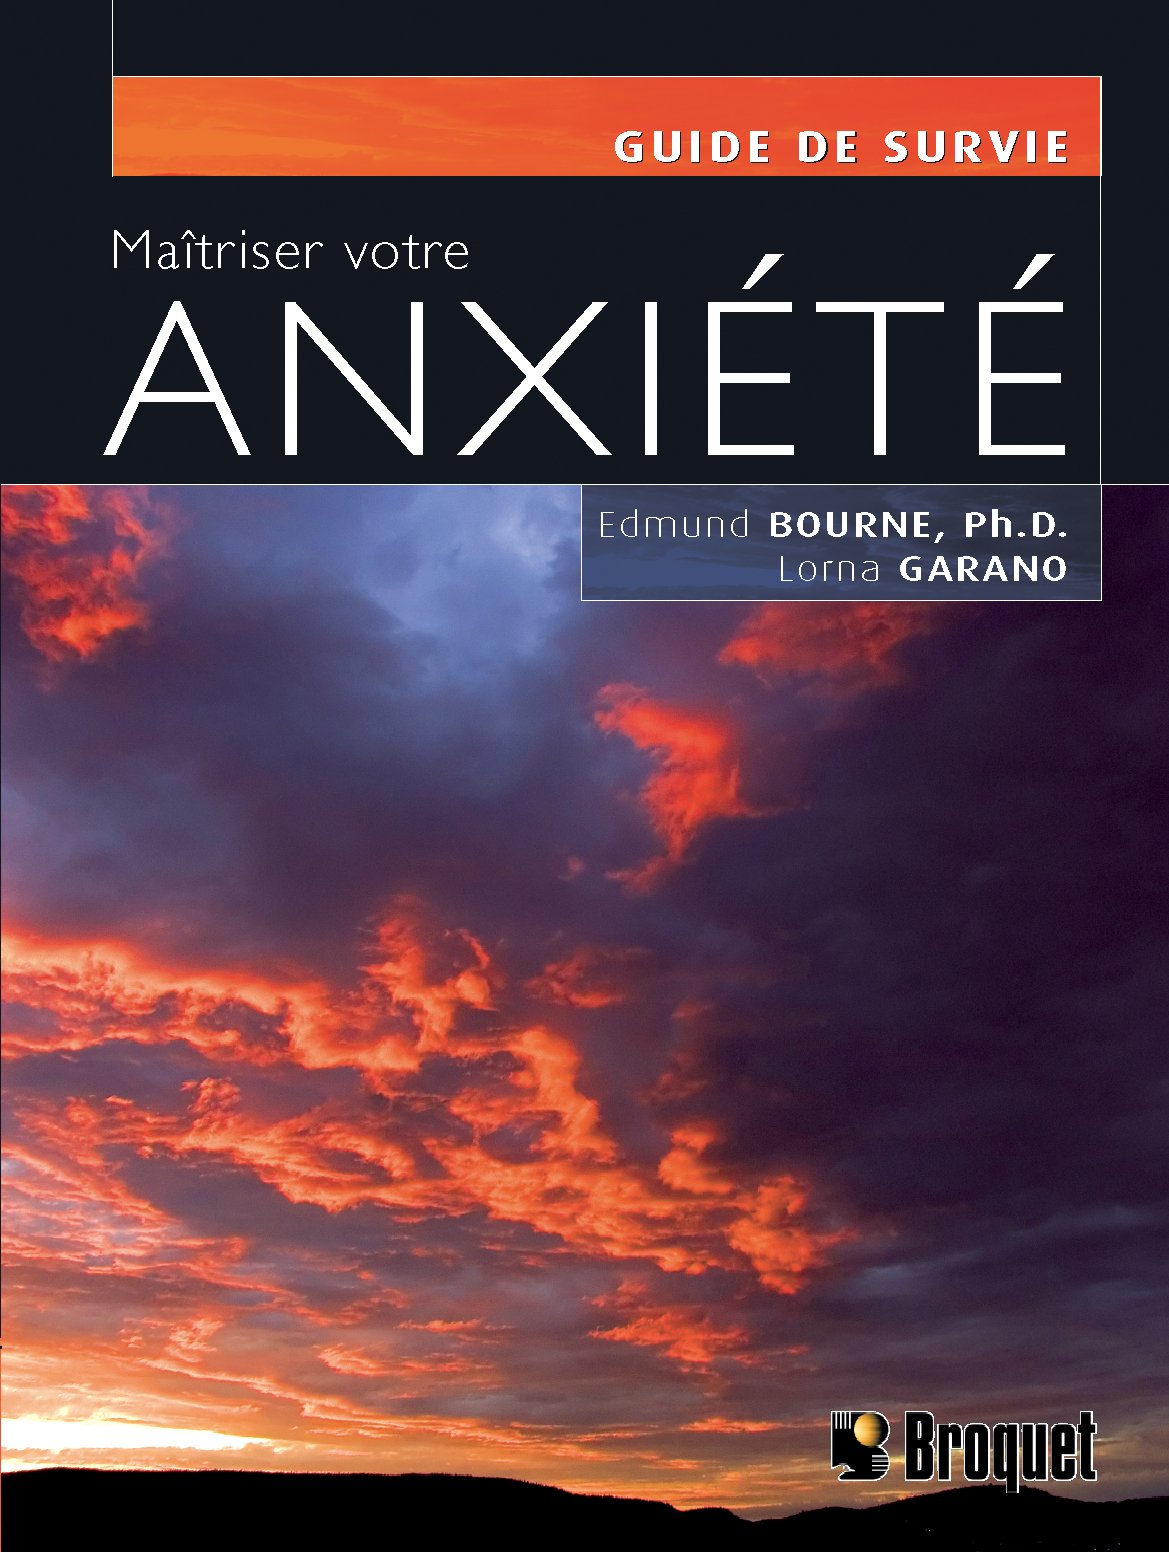 Livre ISBN 2890007200 Guide de survie : Maîtriser votre anxiété (Edmund Bourne)